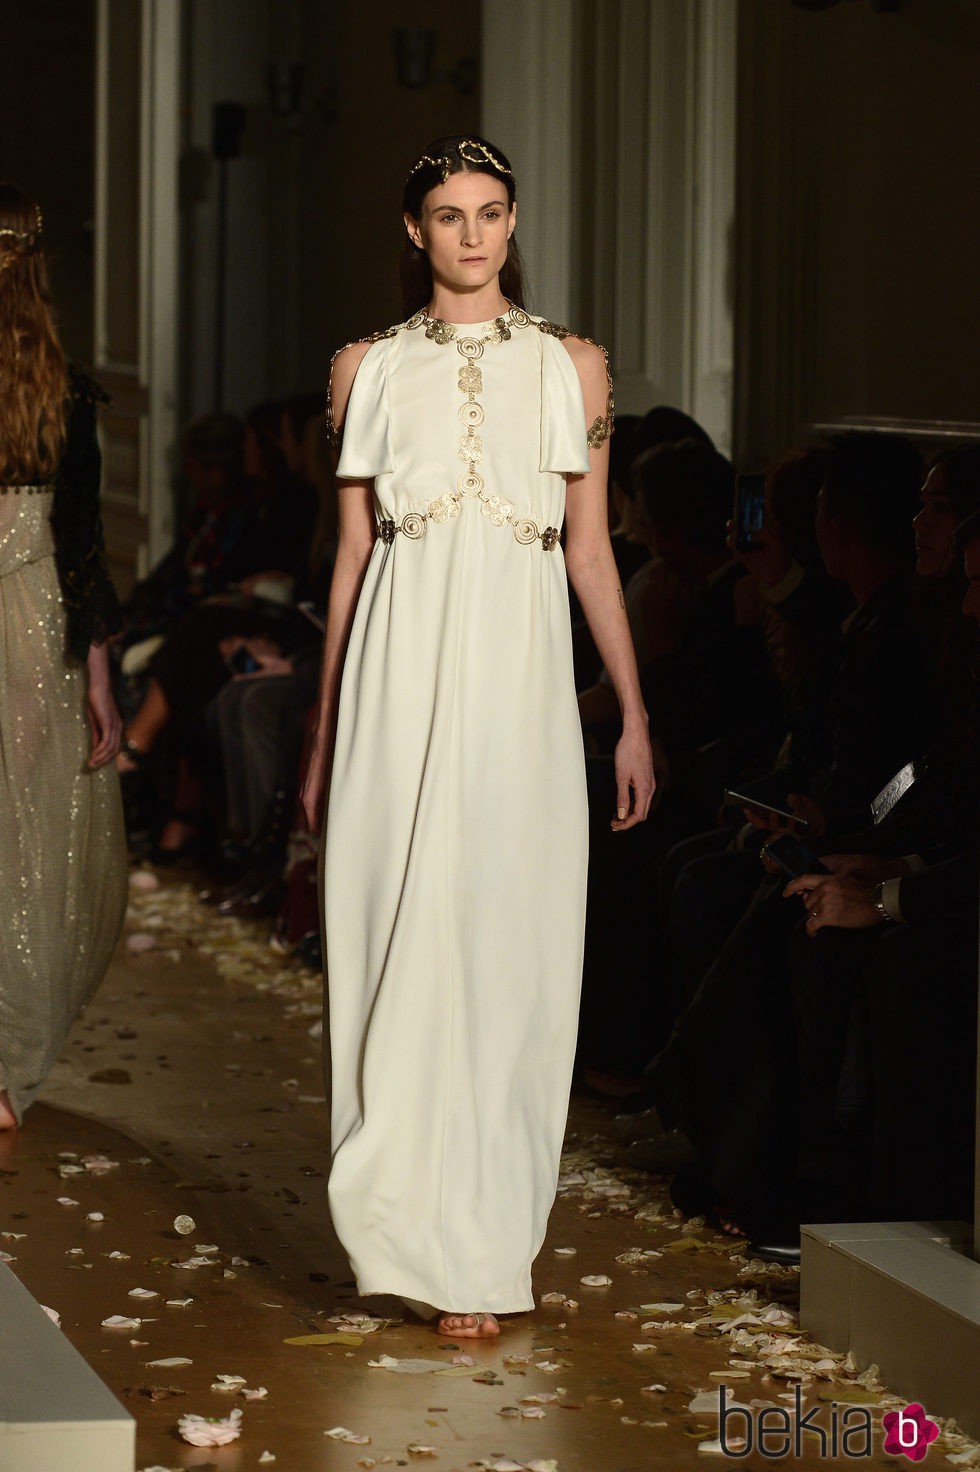 Vestido blanco con mangas abiertas y detalles dorados de Valentino en la Semana de la Alta Costura de París primavera/verano 2016